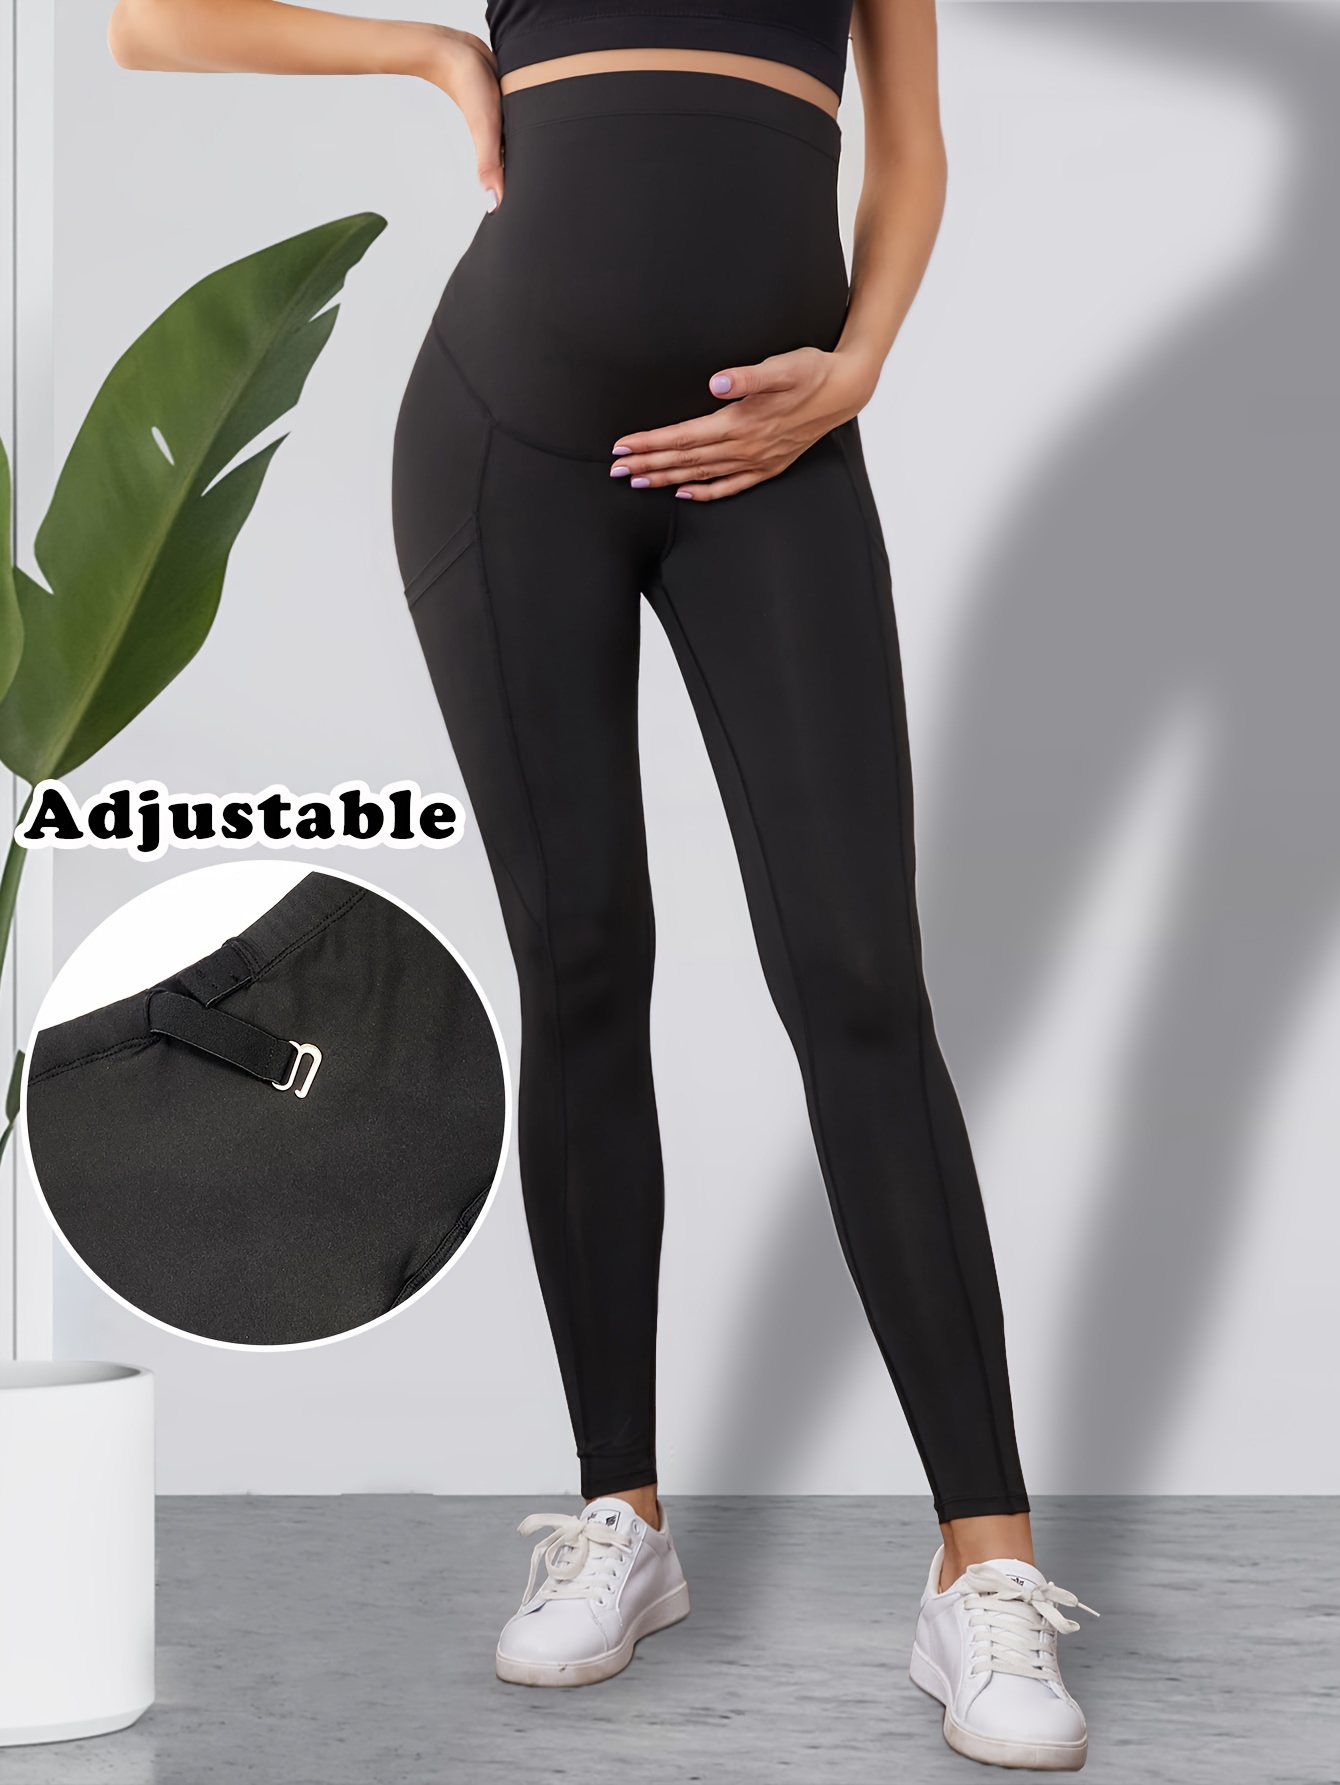 Black high waisted maternity leggings